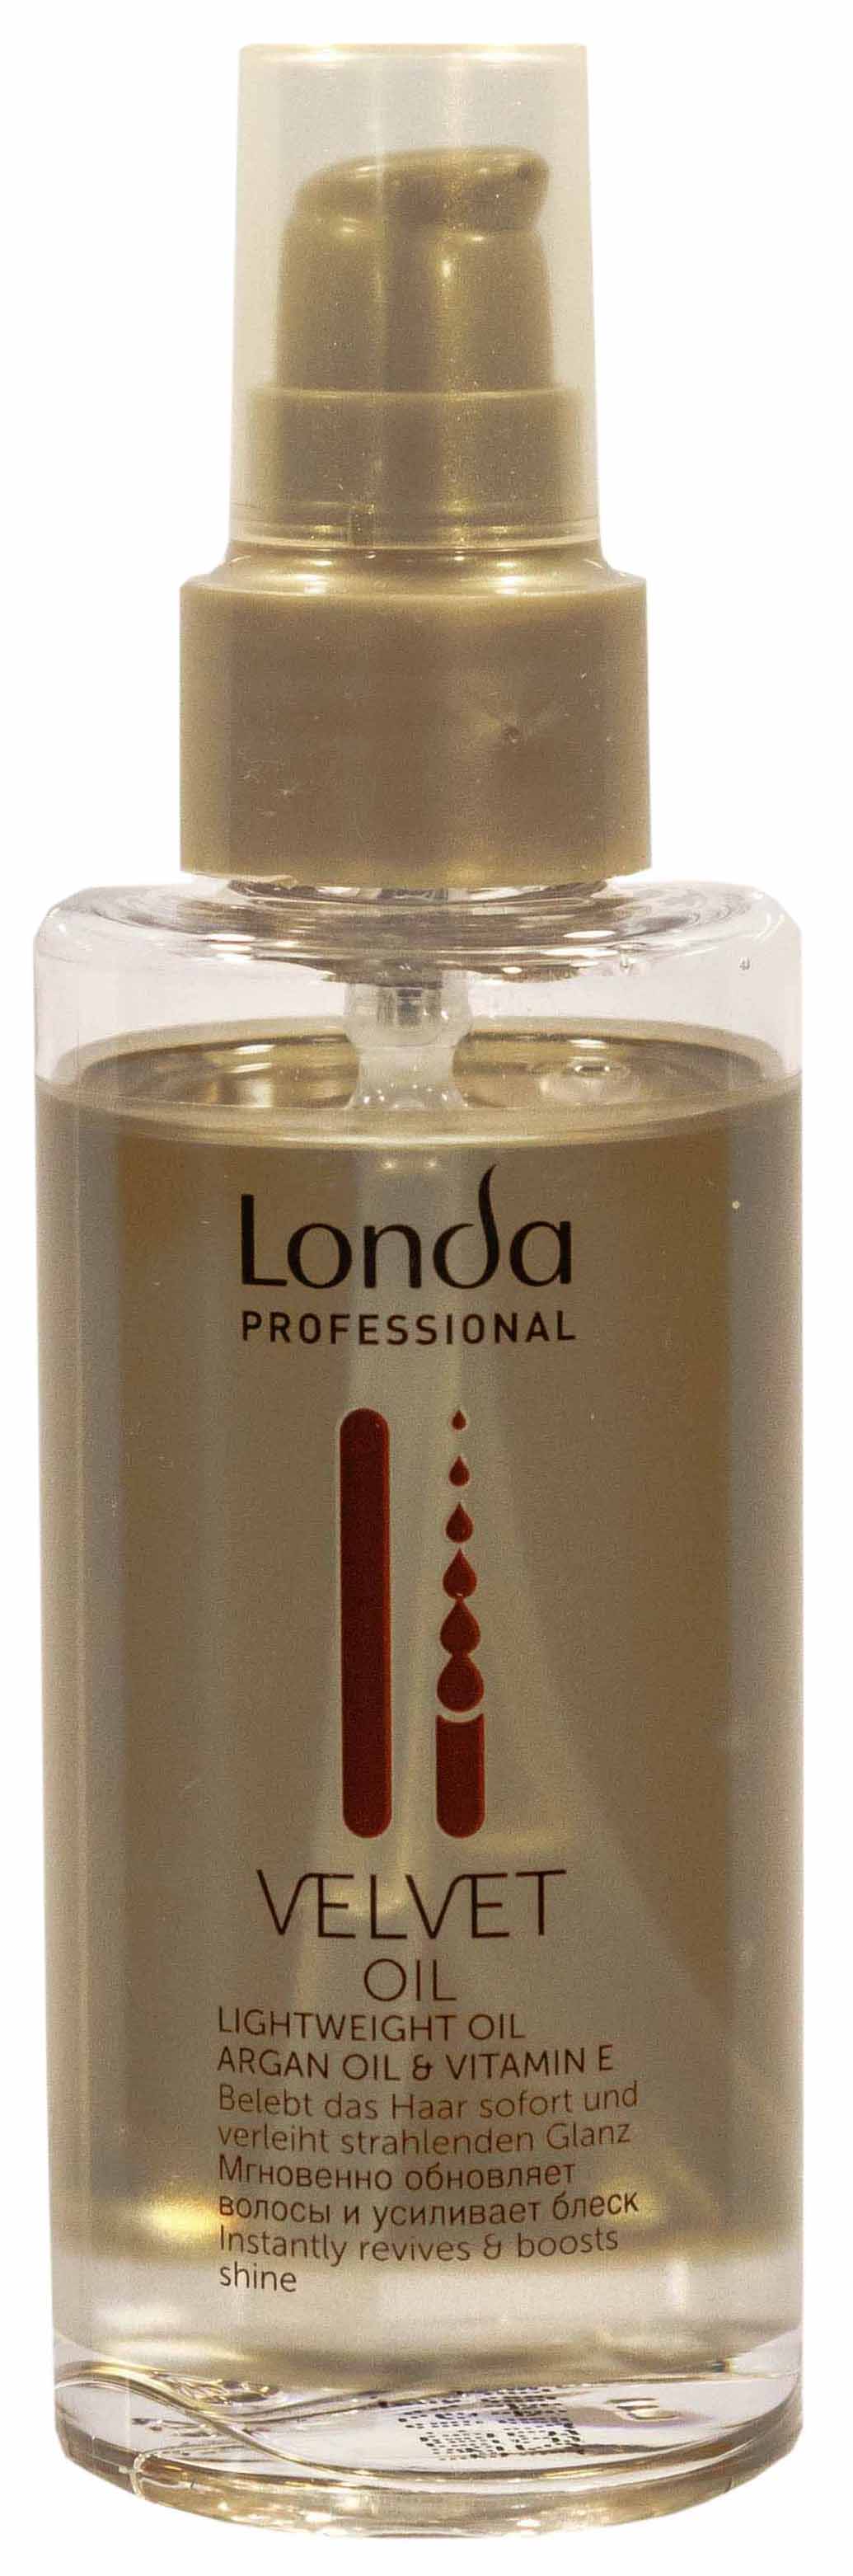 Купить Масло для волос Londa Professional Velvet Oil с аргановым маслом 100 мл